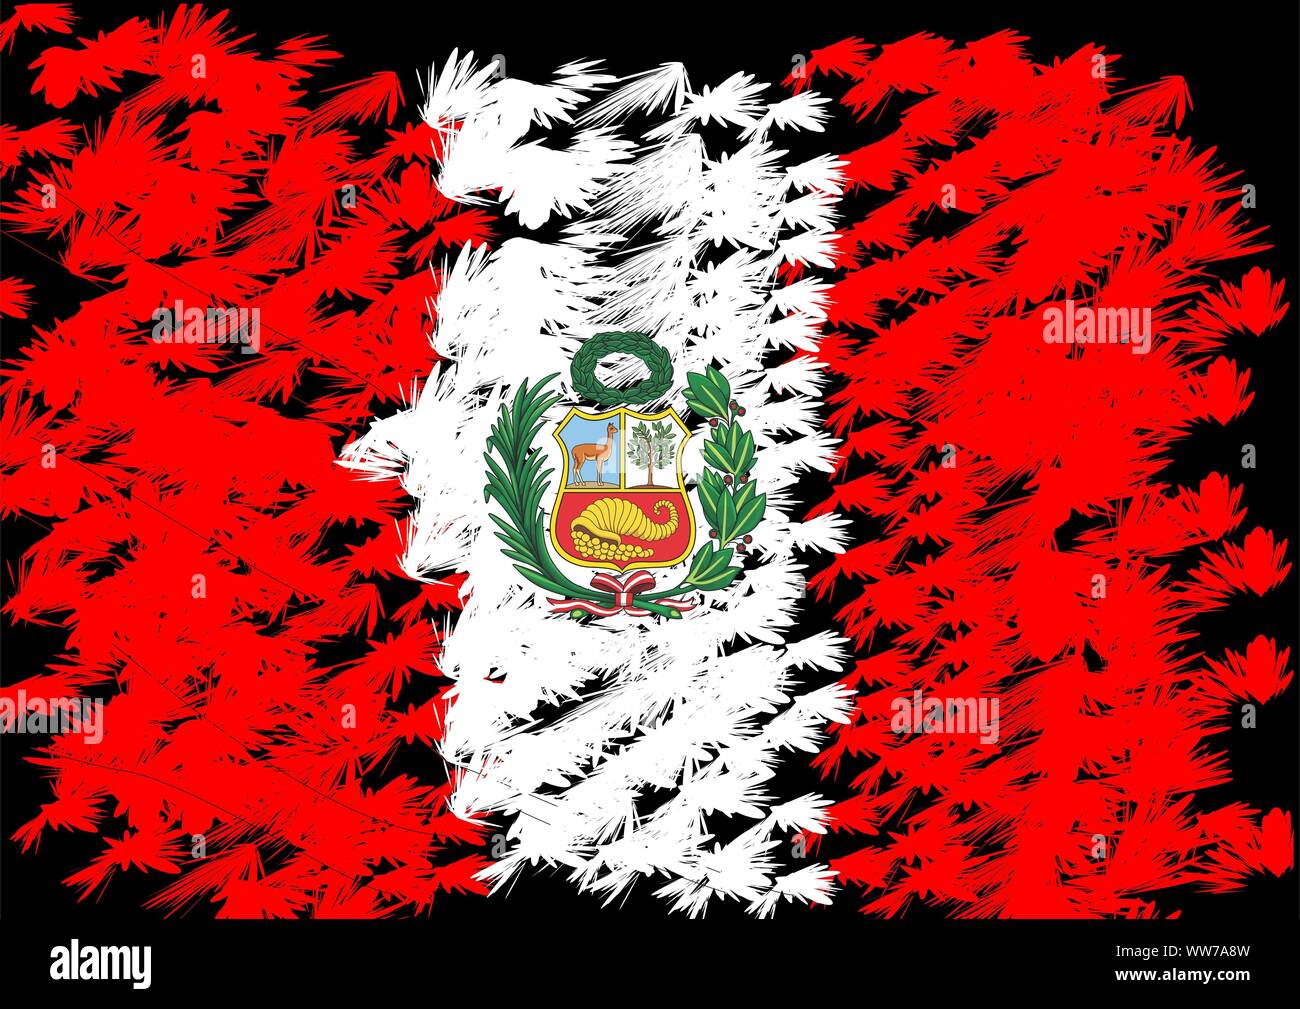 Pérou drapeau, drapeau péruvien dans les couleurs rouge et blanc Banque D'Images